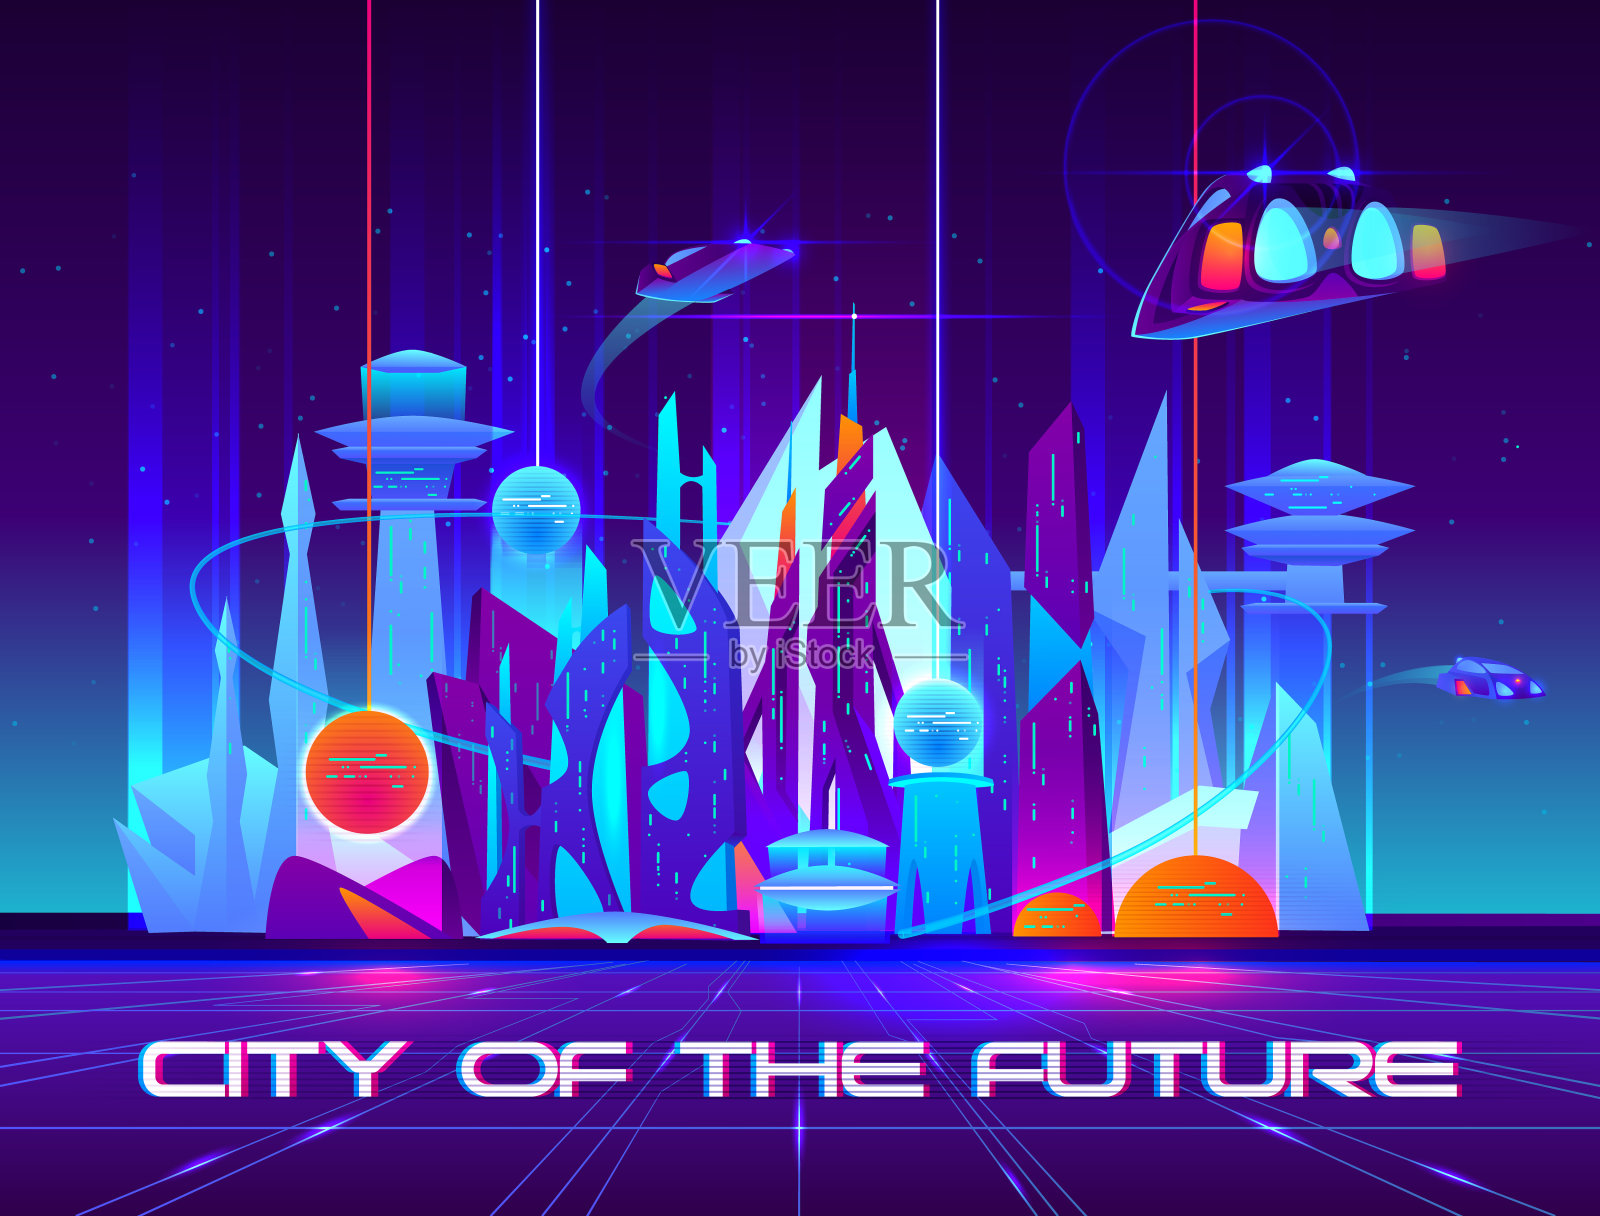 夜晚的未来之城，霓虹闪烁设计模板素材